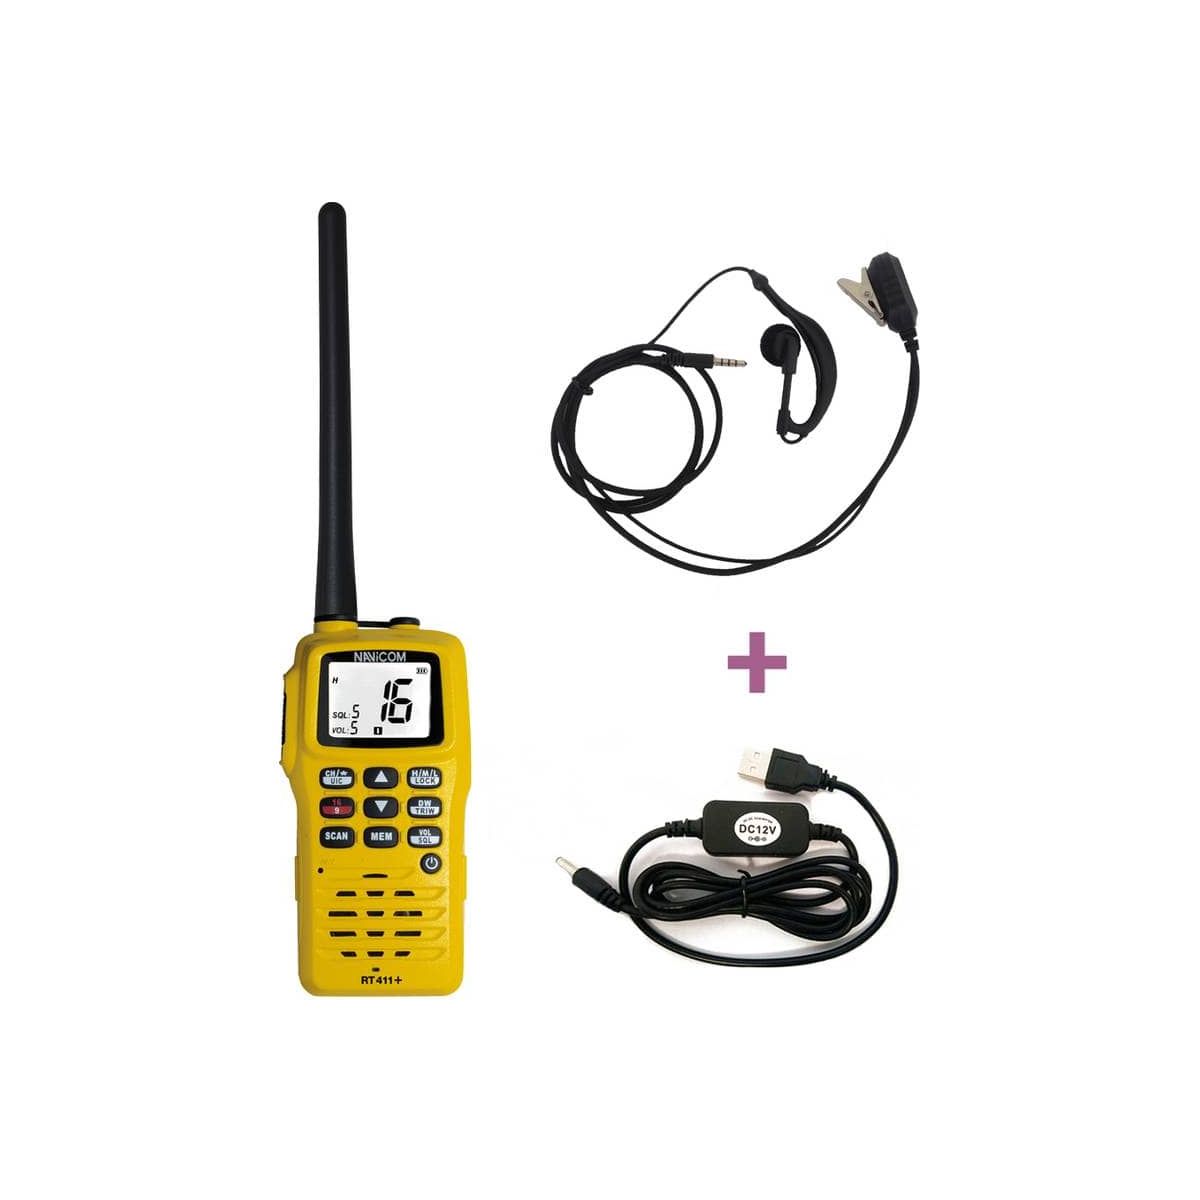 PACK VHF RT411